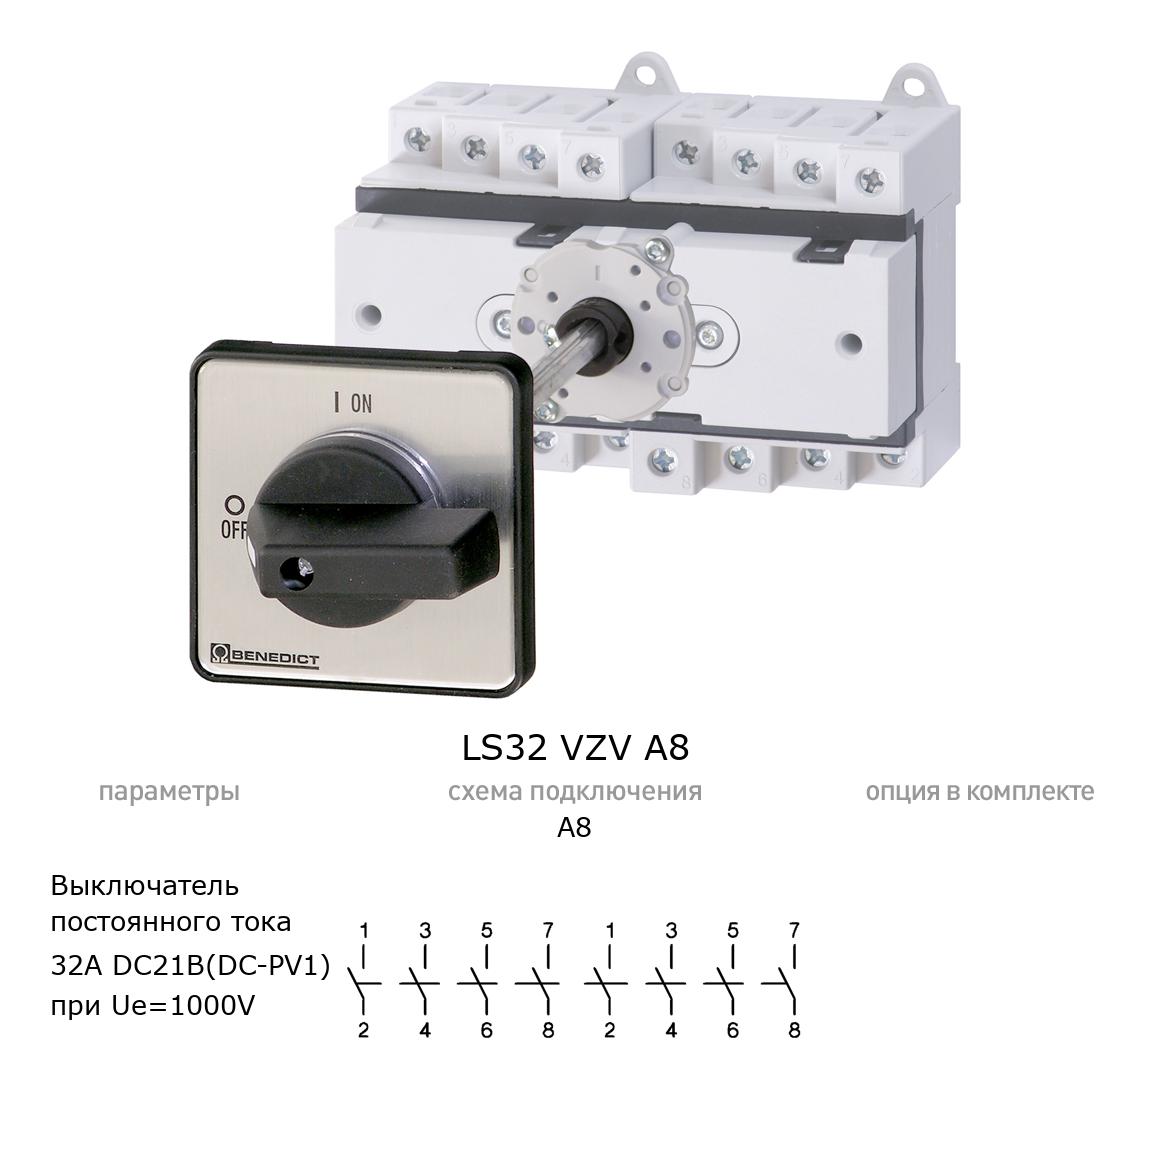 Кулачковый переключатель для постоянного тока (DC) LS32 VZV A8 BENEDICT